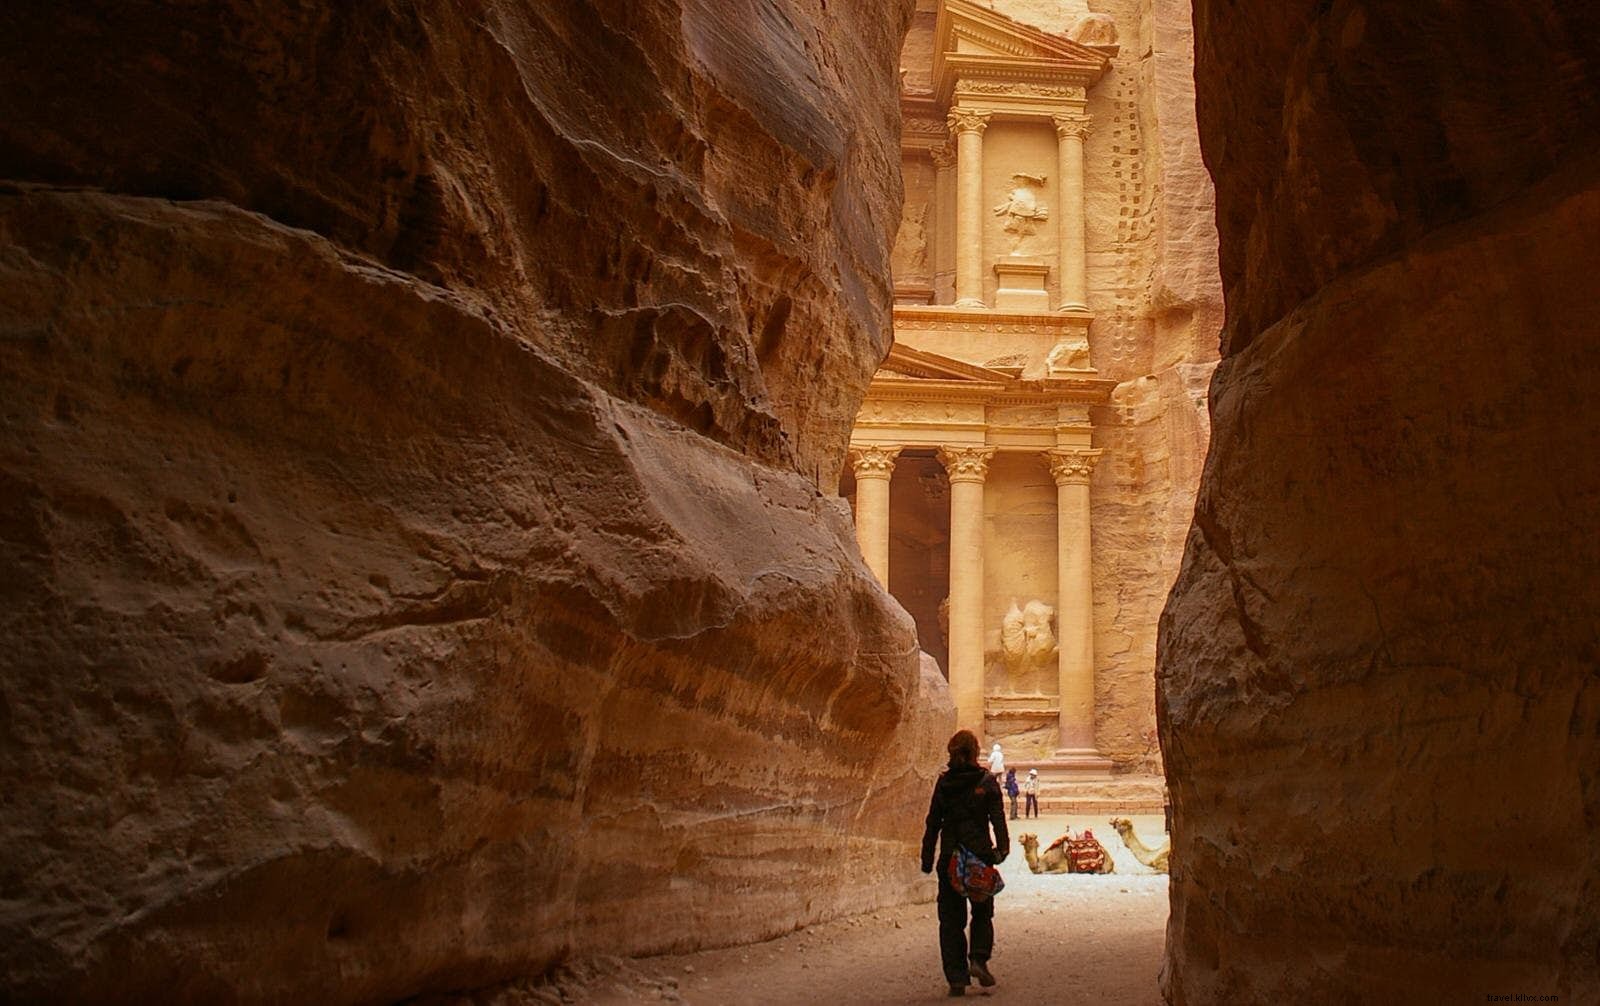 Uma caminhada sagrada:Wadi Dana a Petra ao longo da trilha do Jordão 